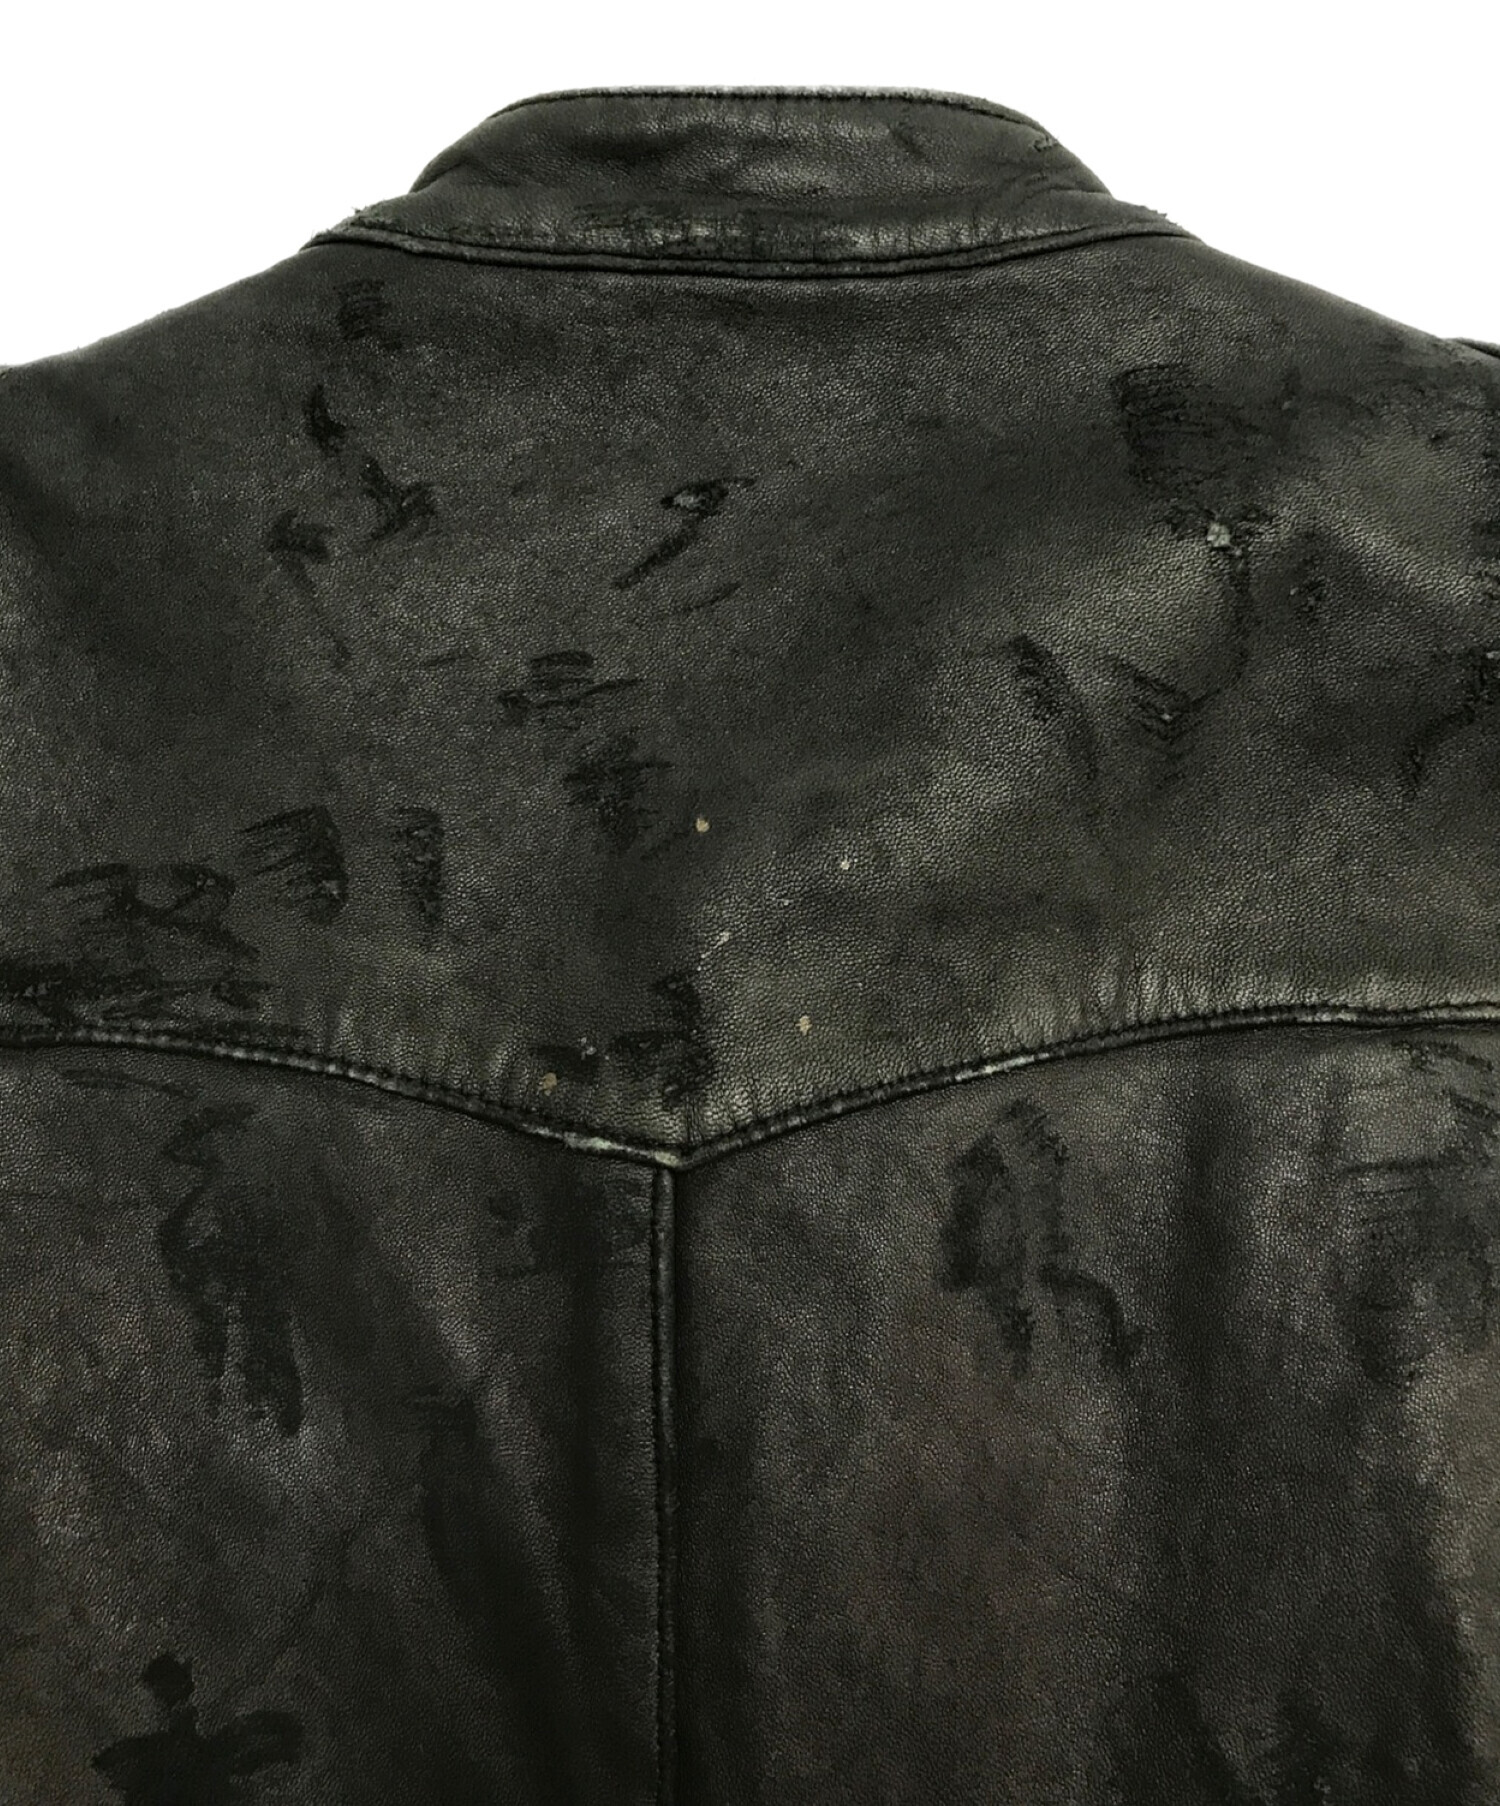 IROQUOIS (イロコイ) ダメージ加工レザージャケット ブラック サイズ:M